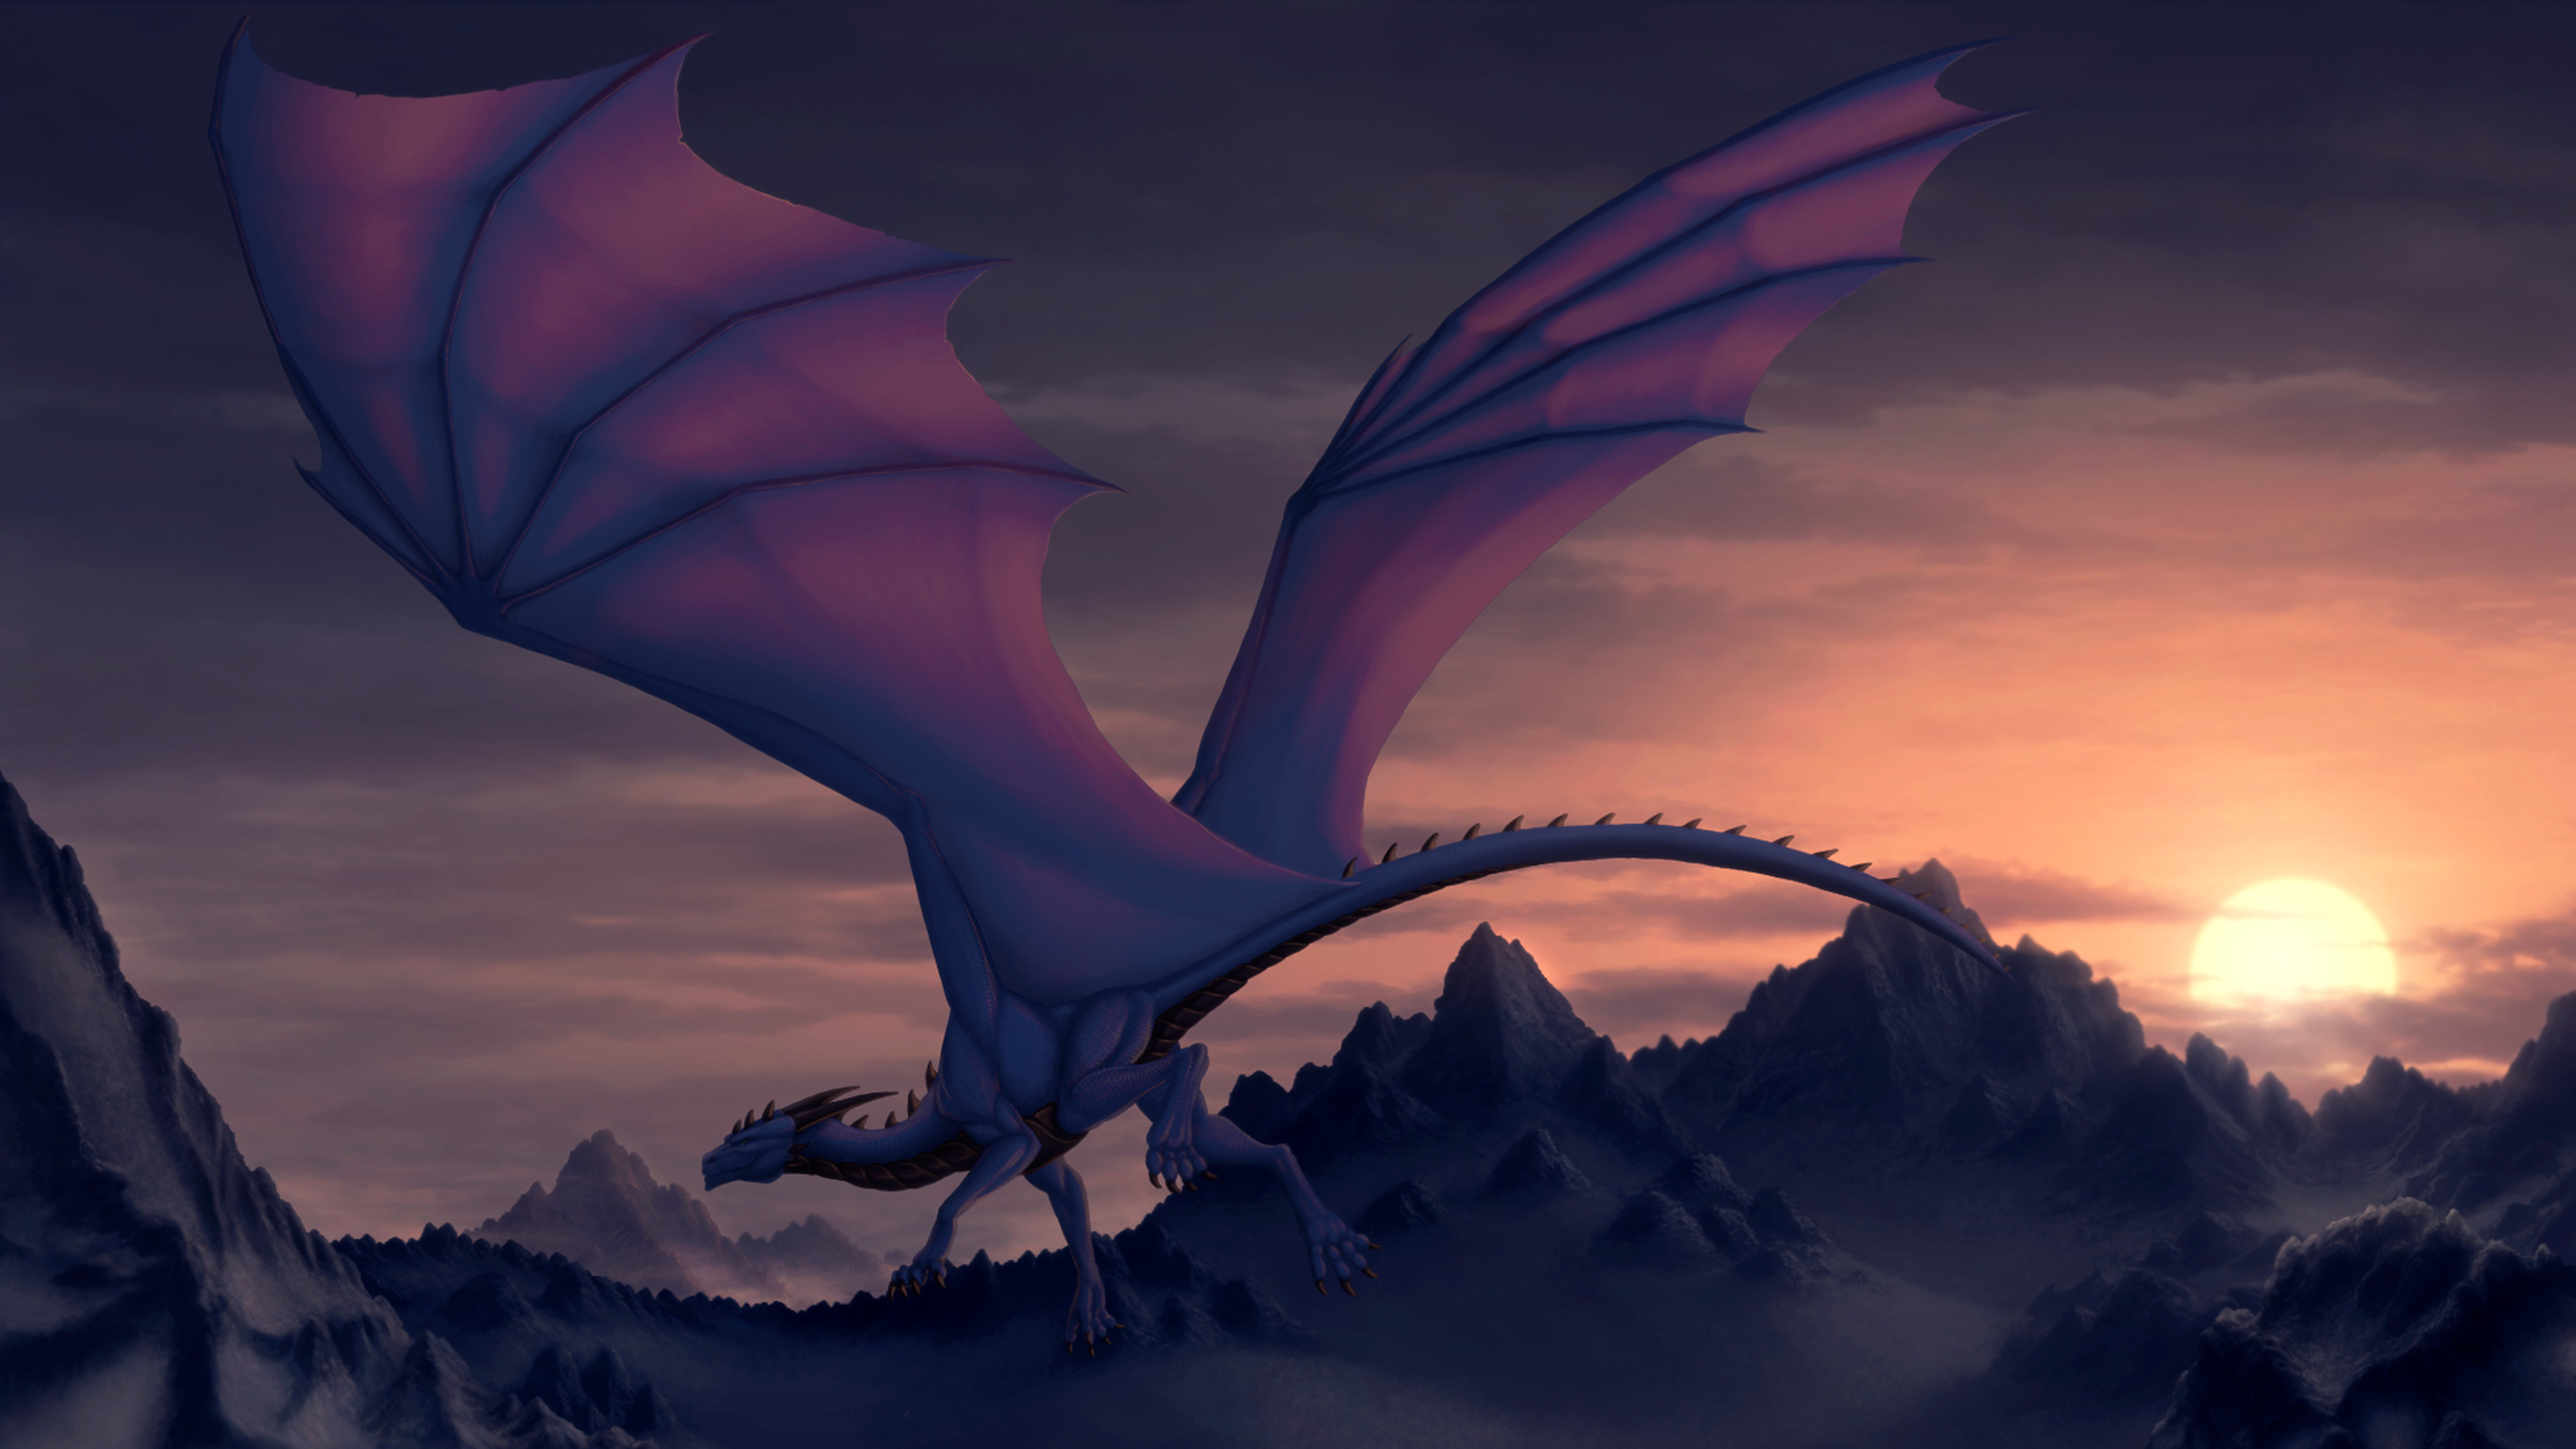 fond d'écran dragon,dragon,ciel,oeuvre de cg,personnage fictif,aile